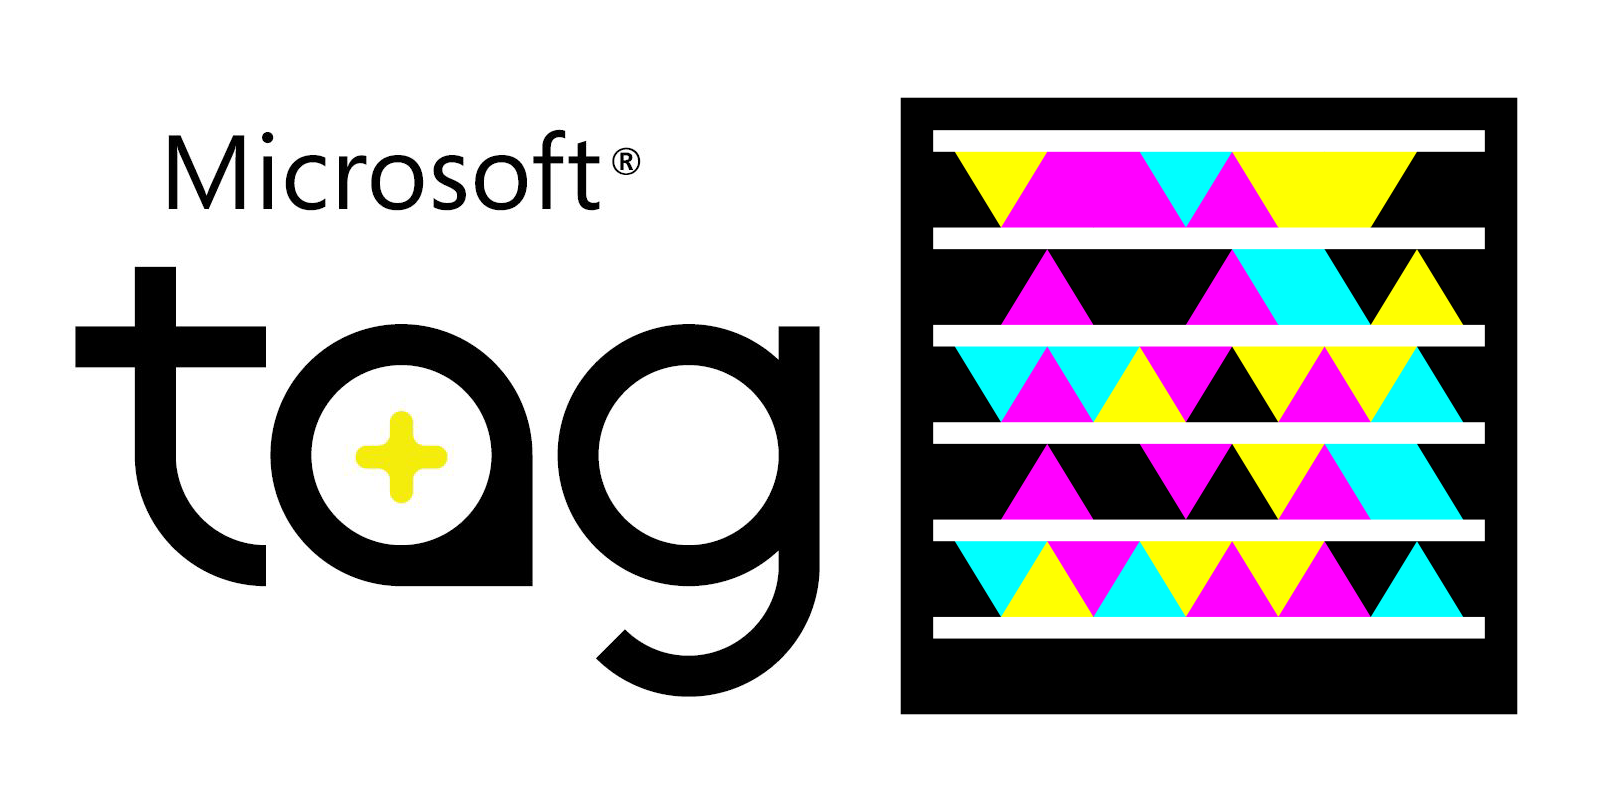 Microsoft Tag Logo and Barcode (2010)